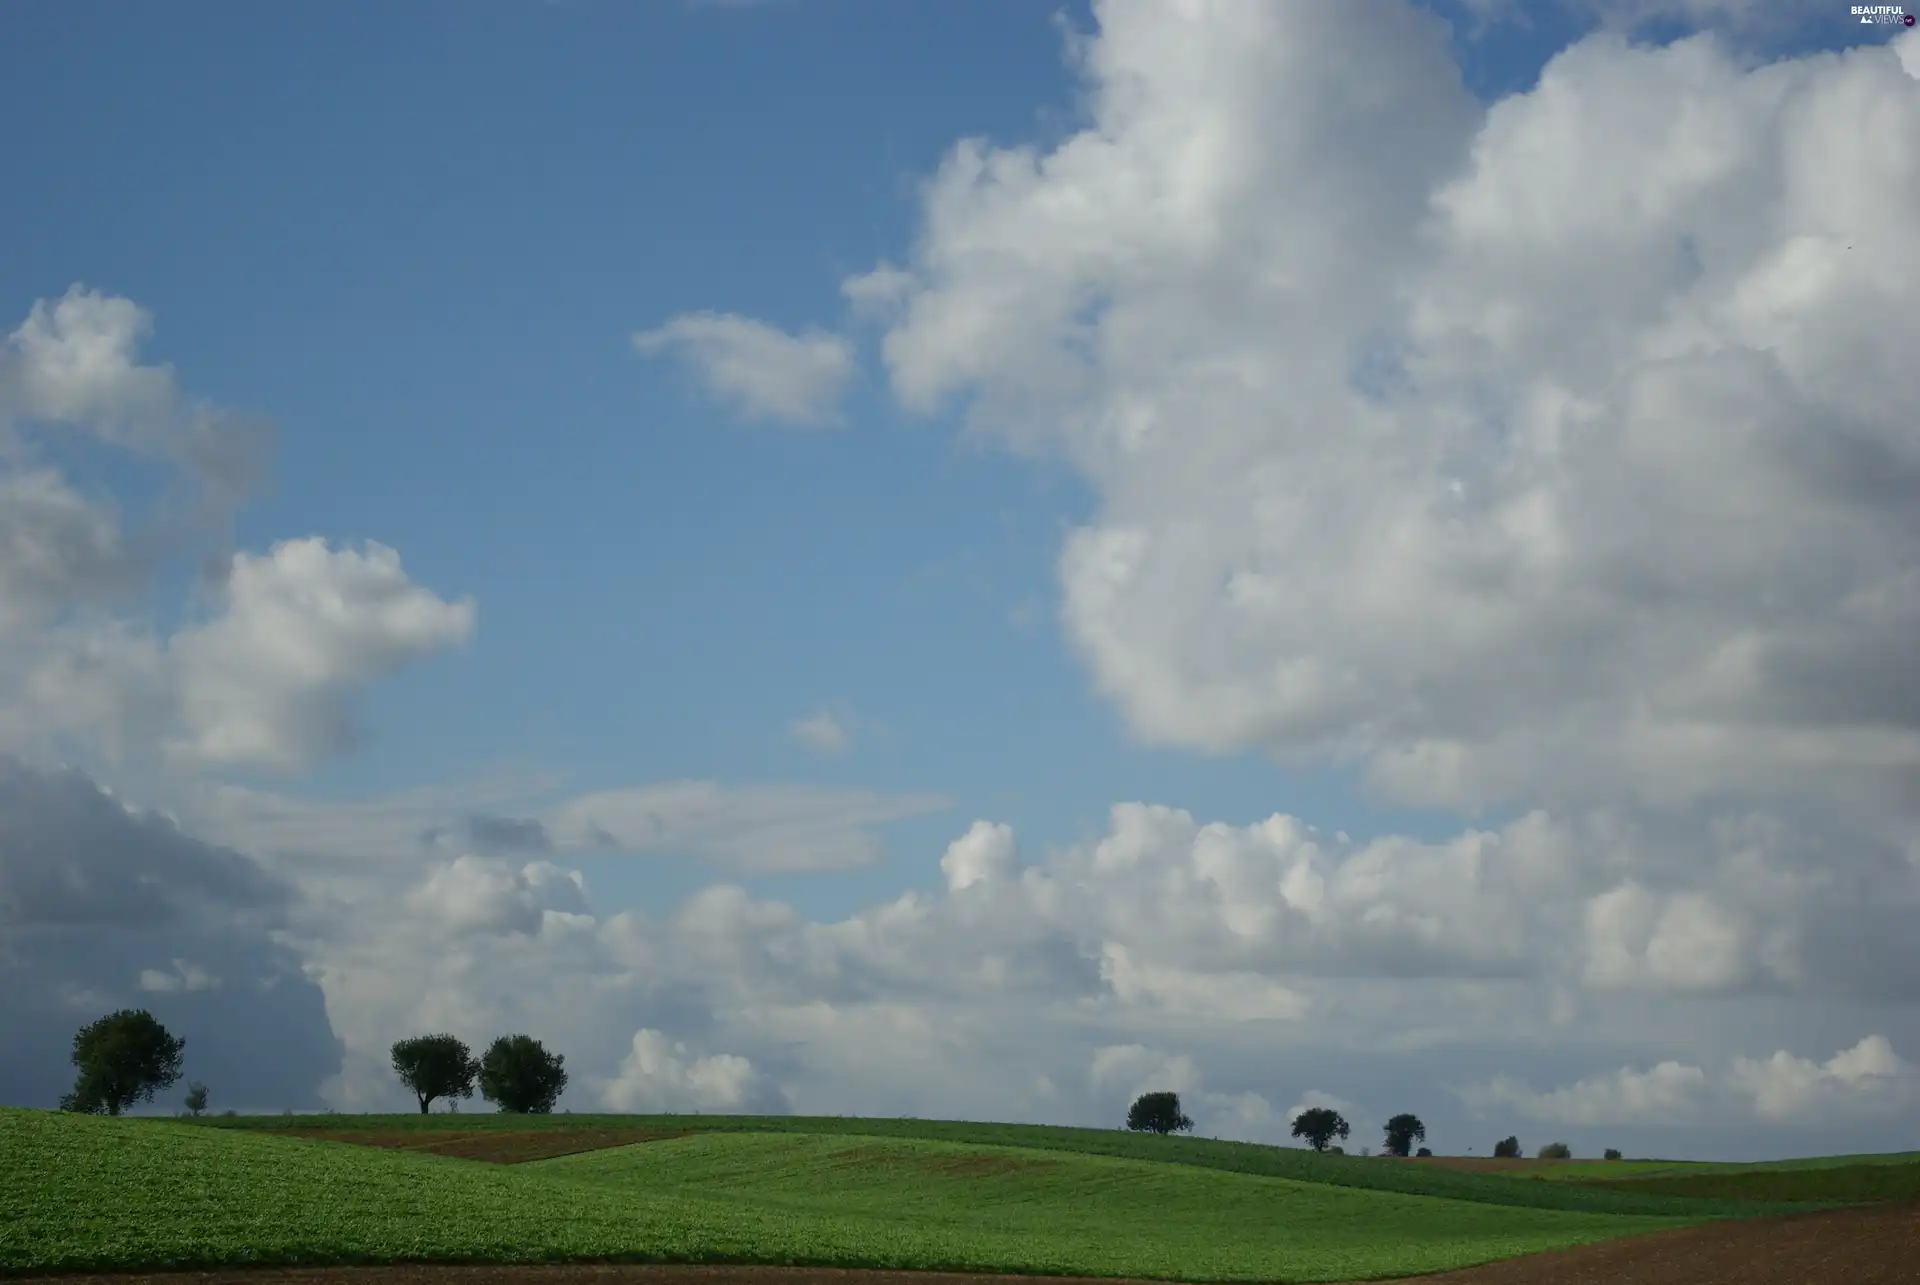 field, clouds